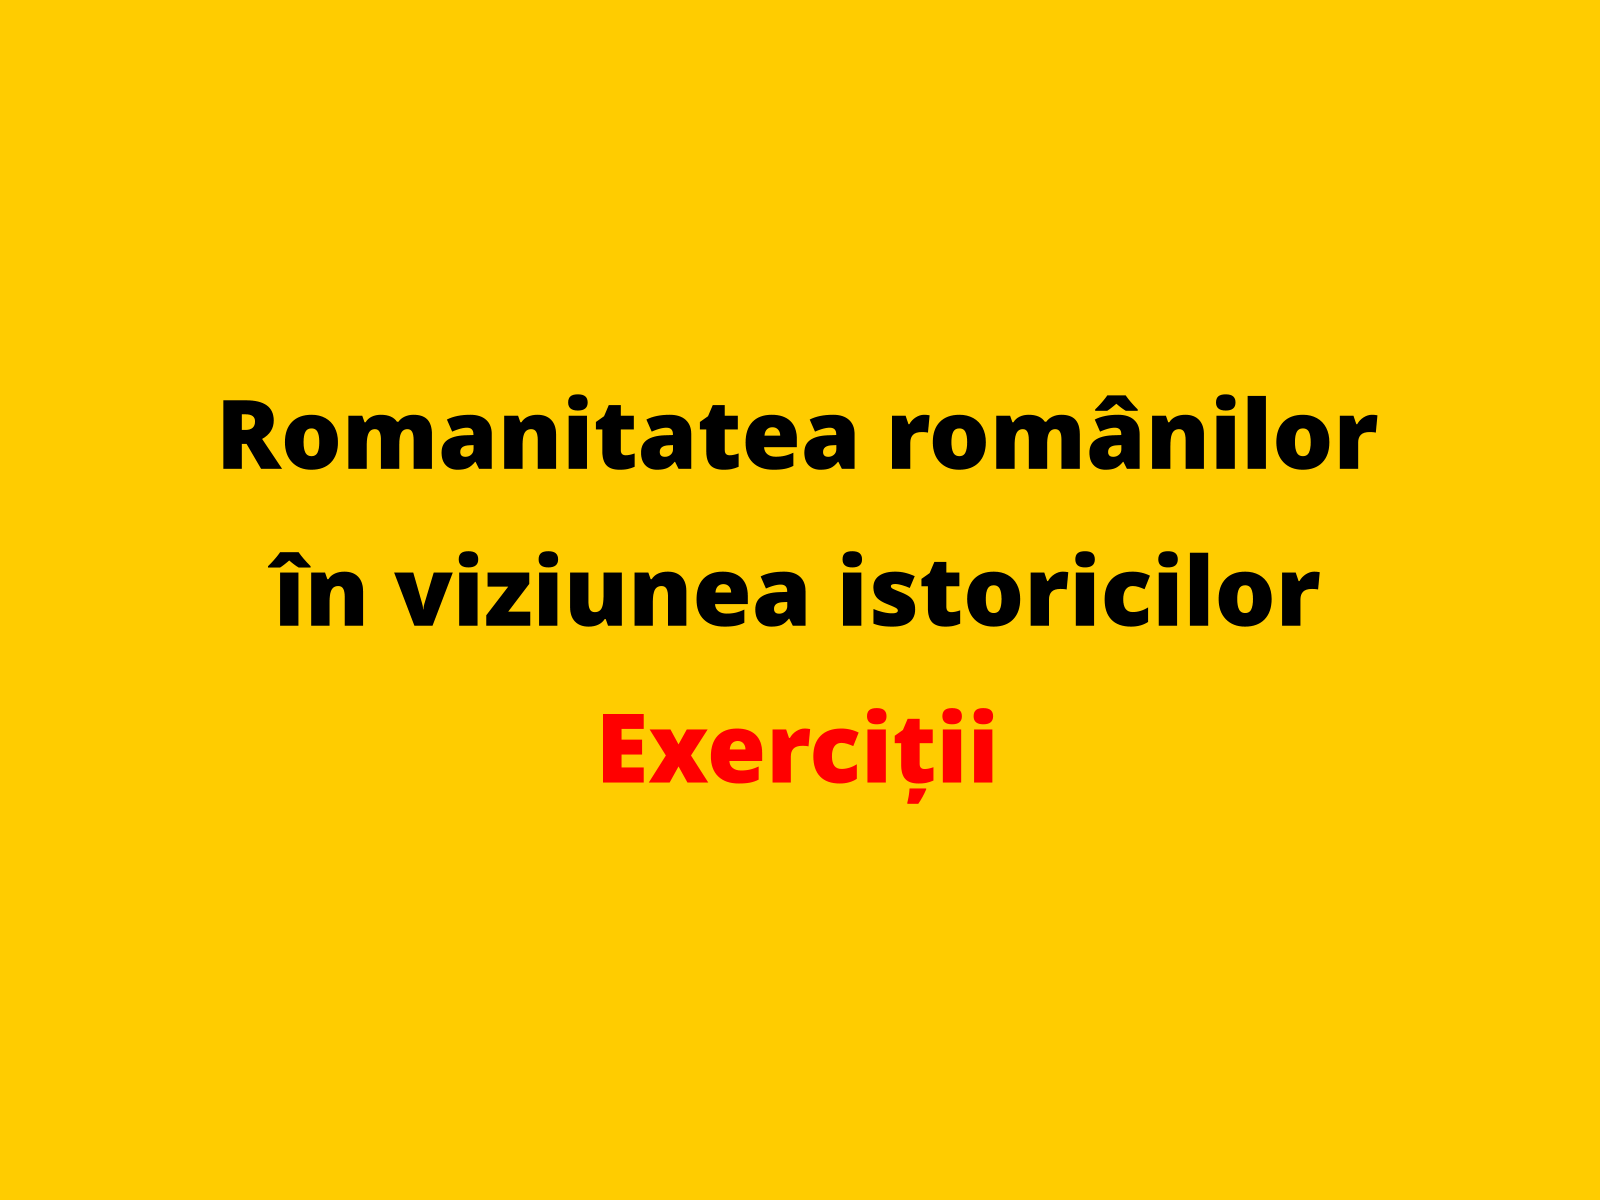 Menționați o caracteristică a izvoarelor istorice care susțin romanitatea românilor în secolul al XV-lea